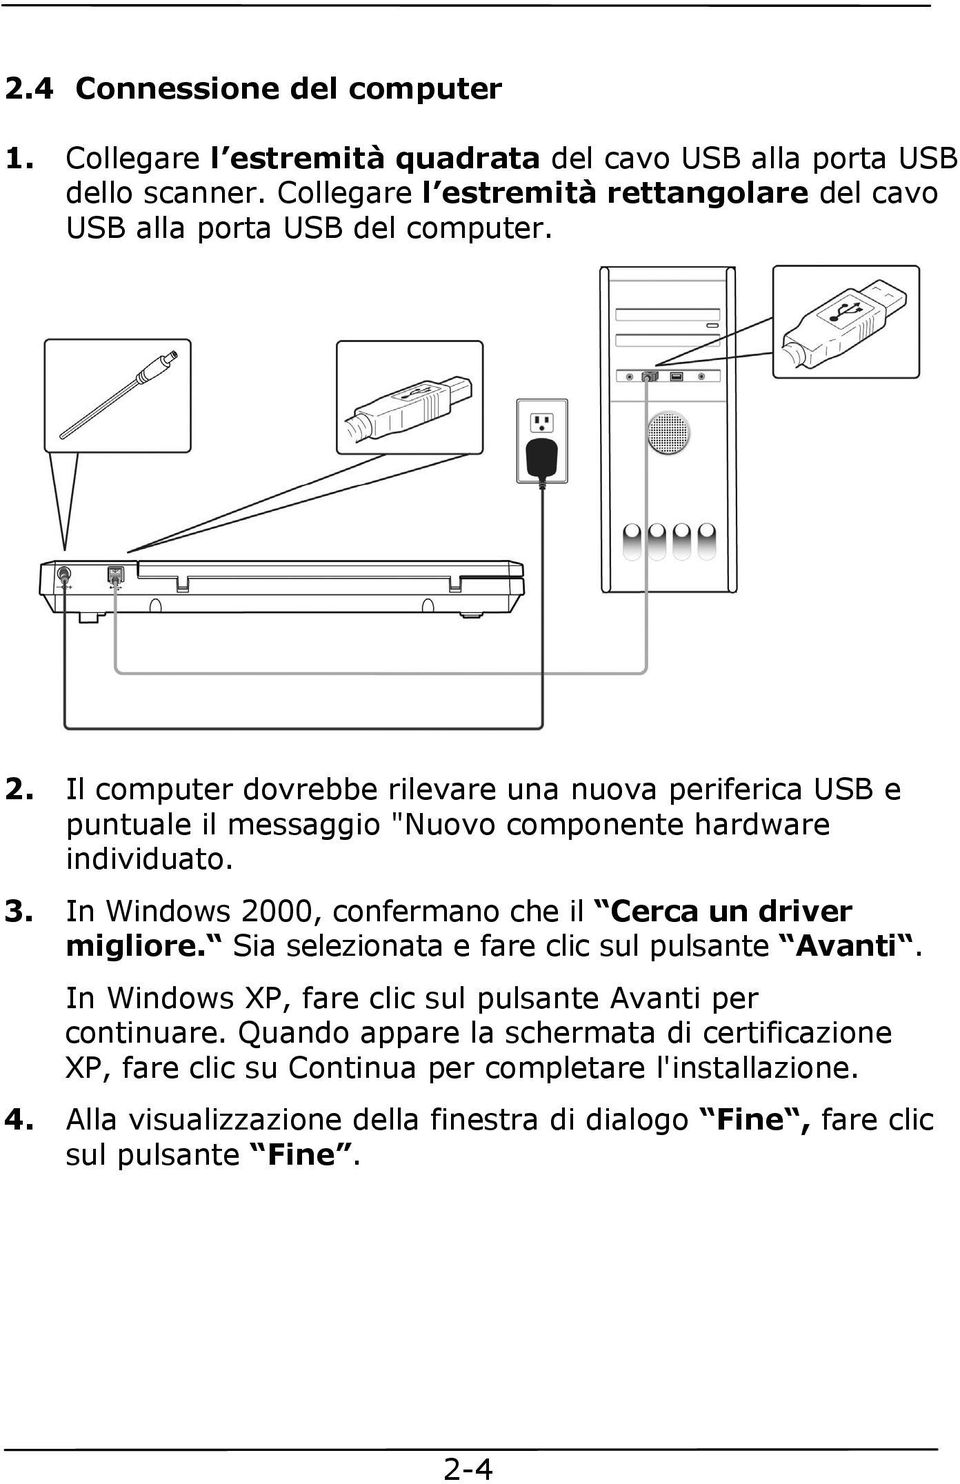 Il computer dovrebbe rilevare una nuova periferica USB e puntuale il messaggio "Nuovo componente hardware individuato. 3.